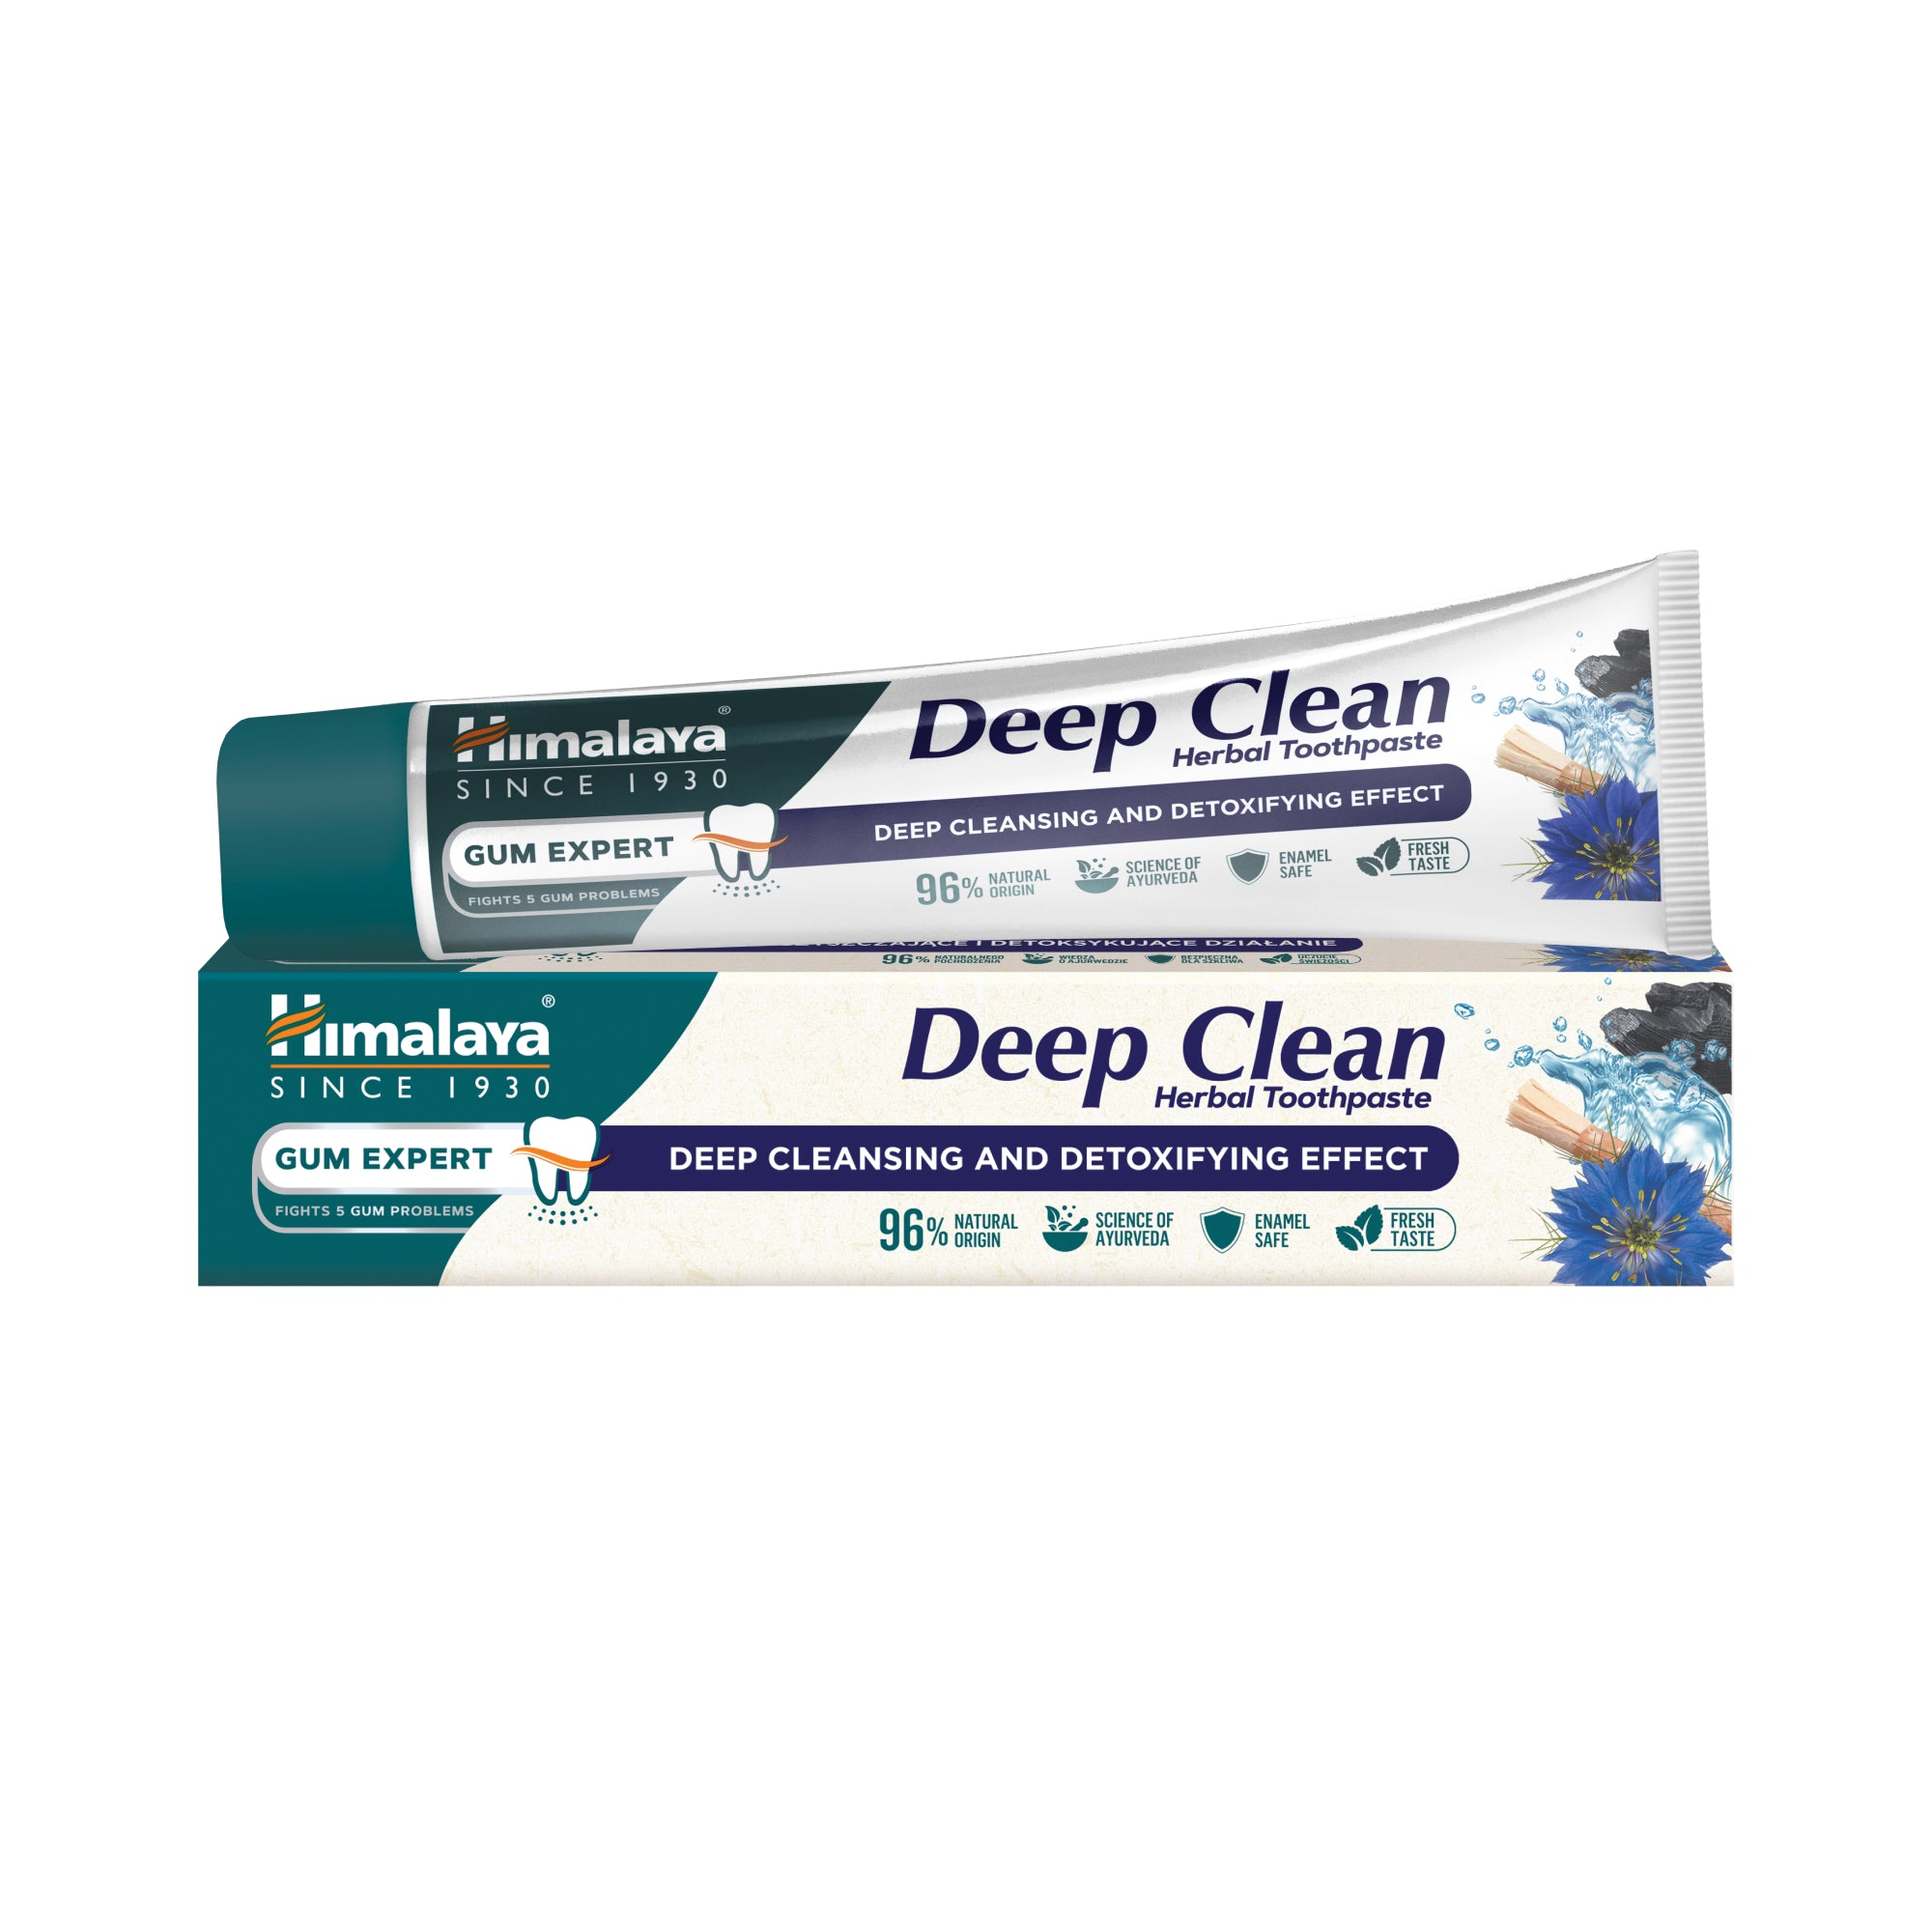  Himalaya Gum Expert Deep Clean Herbal Toothpaste - 75ml FOP